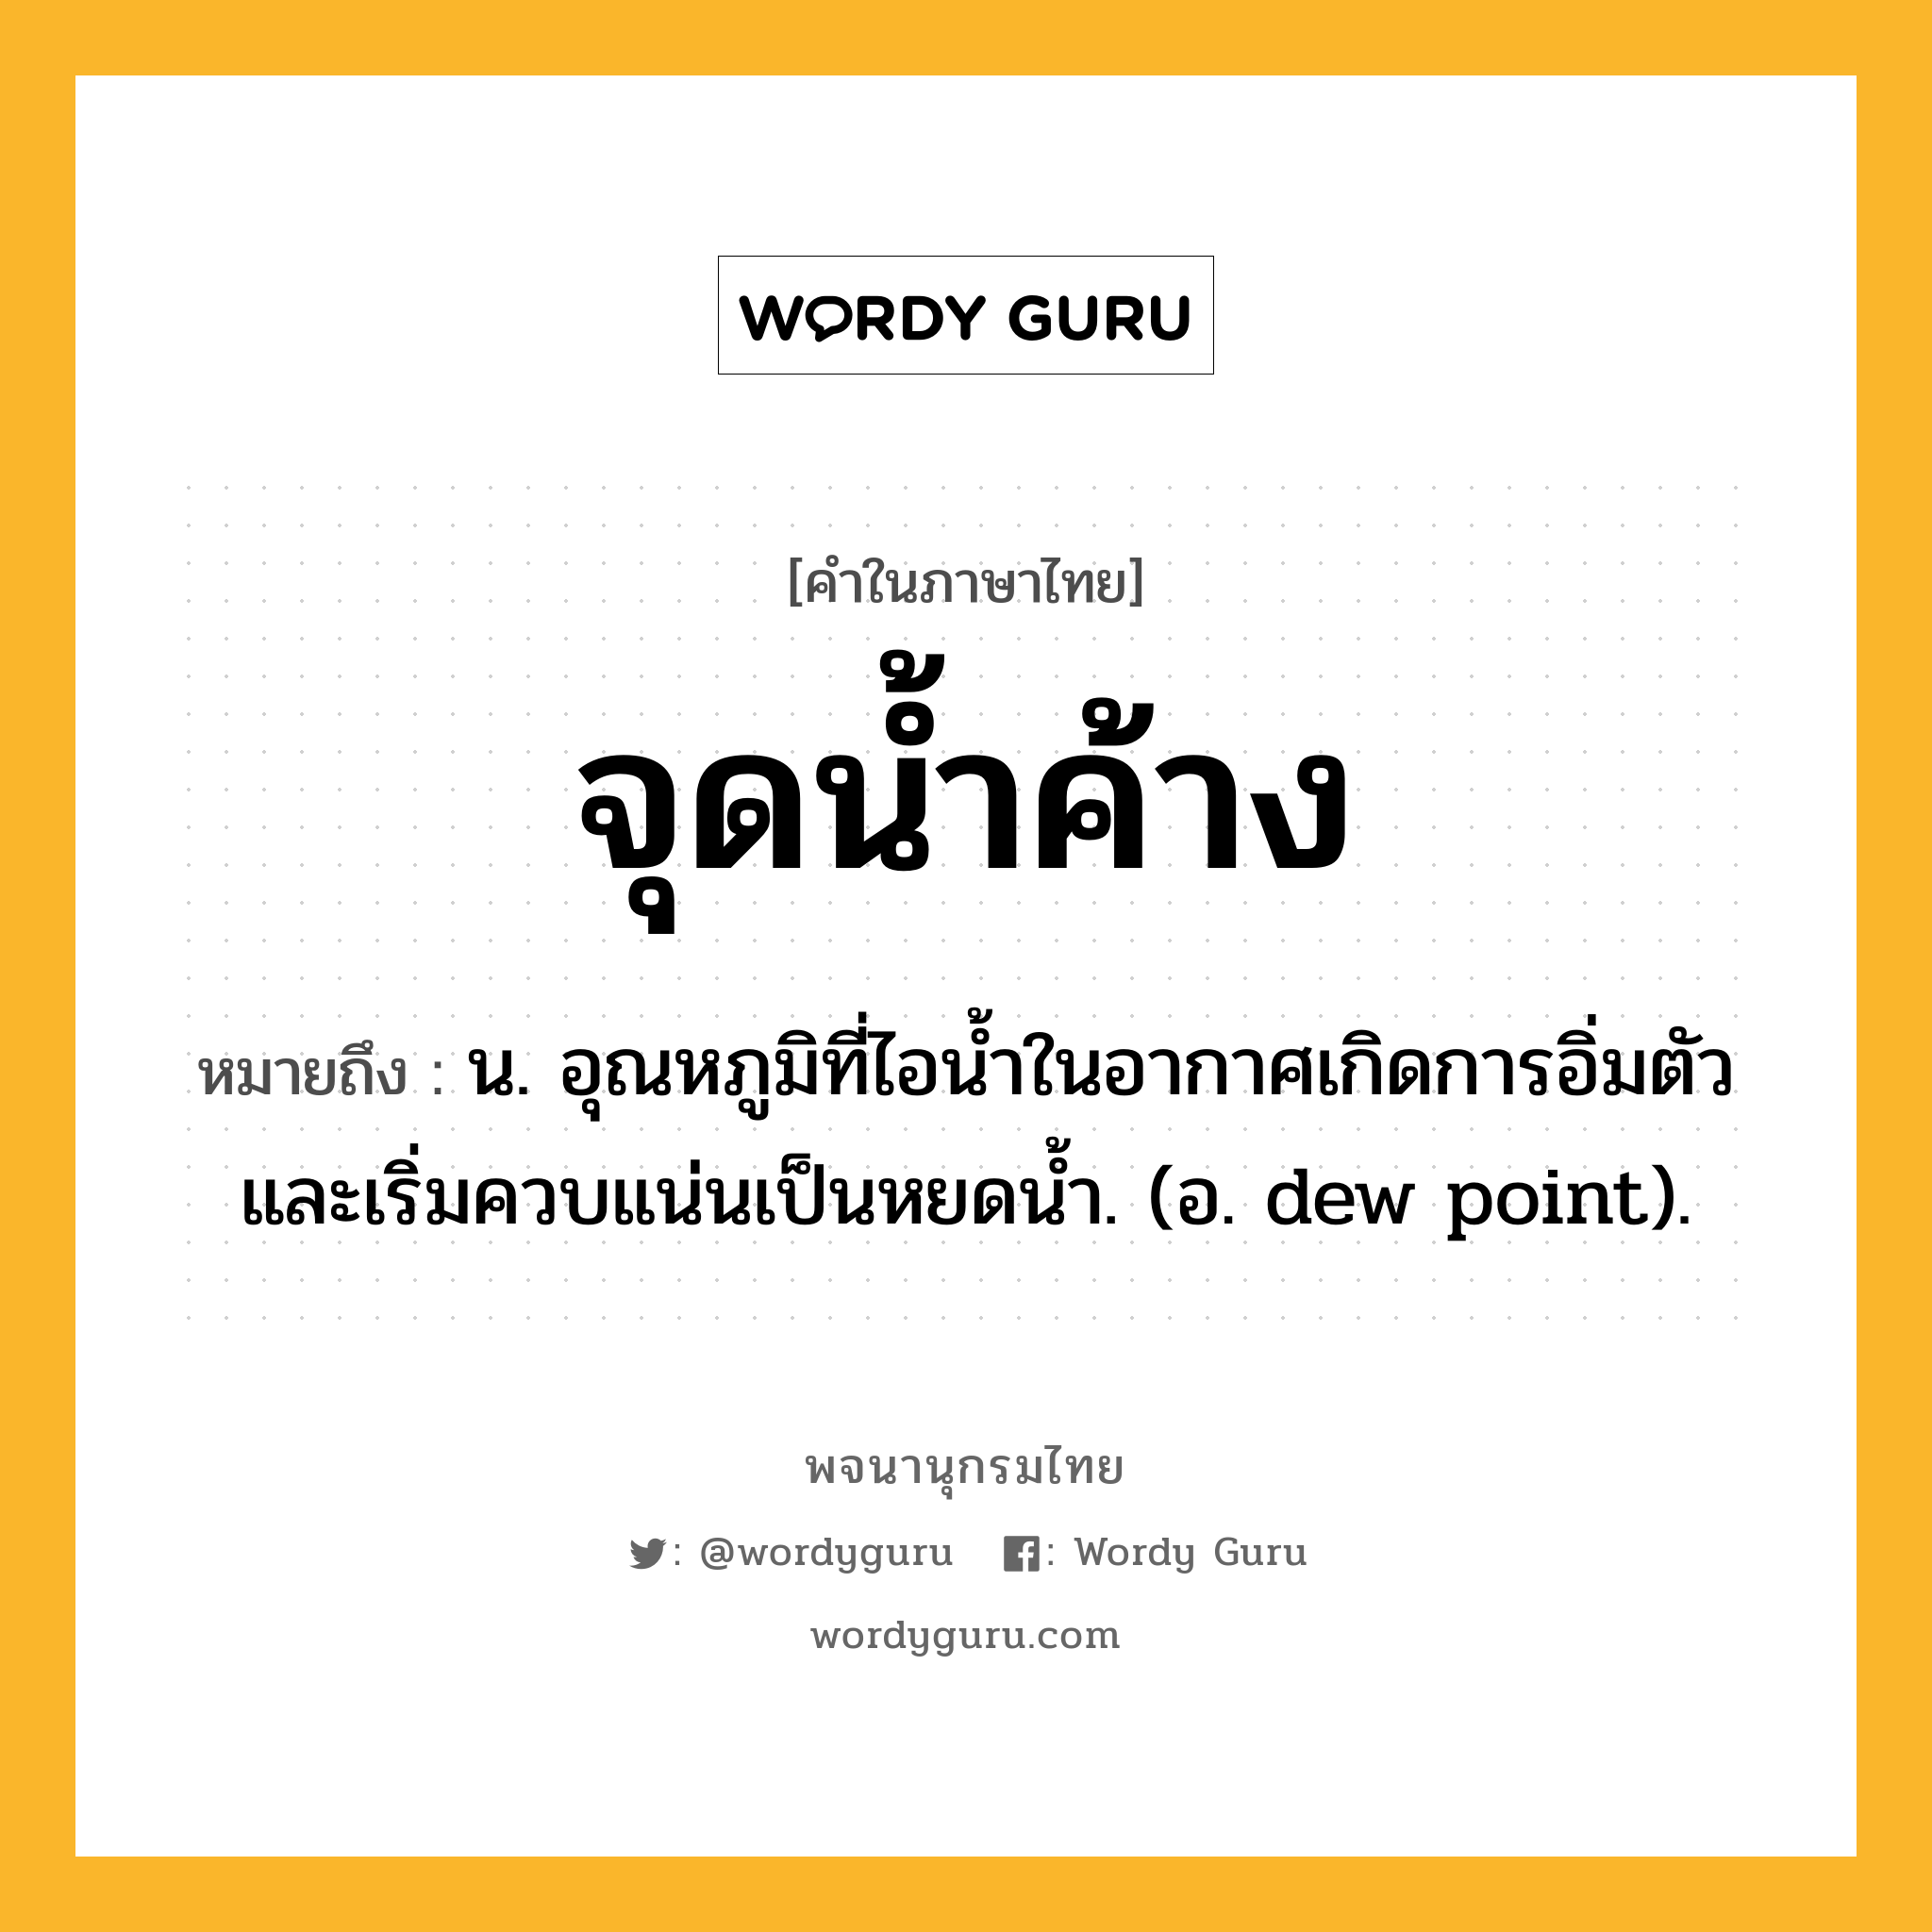 จุดน้ำค้าง หมายถึงอะไร?, คำในภาษาไทย จุดน้ำค้าง หมายถึง น. อุณหภูมิที่ไอนํ้าในอากาศเกิดการอิ่มตัวและเริ่มควบแน่นเป็นหยดนํ้า. (อ. dew point).